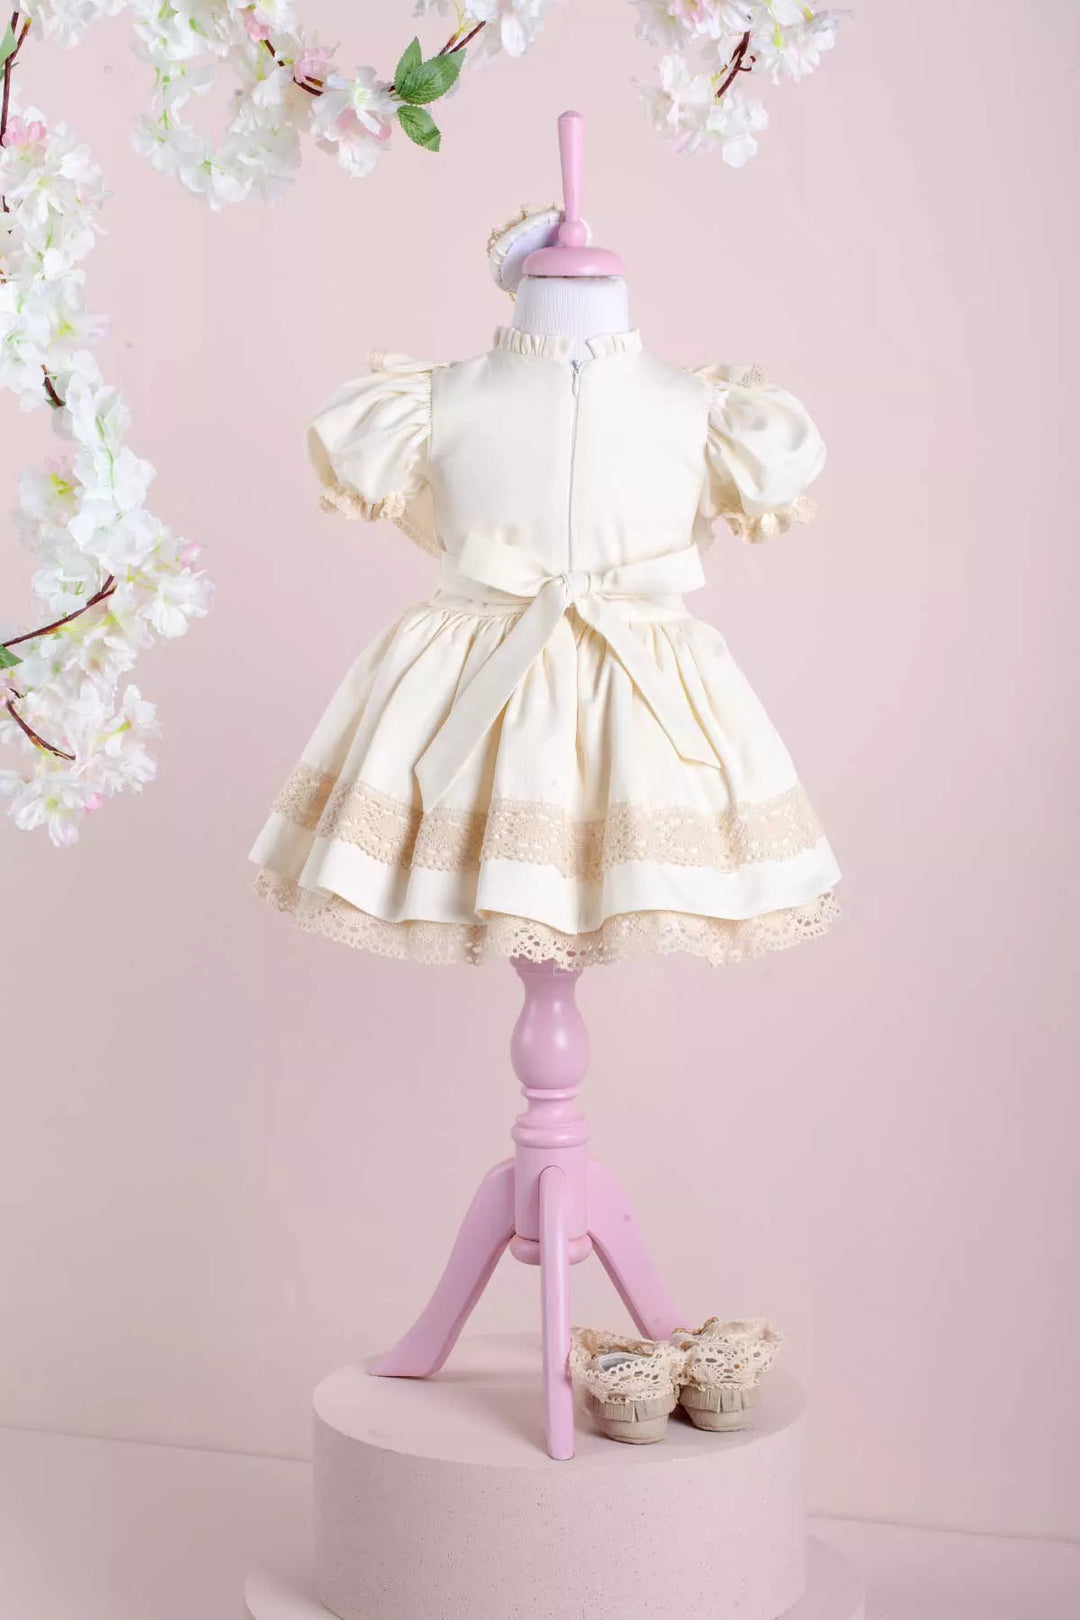 White baby dress